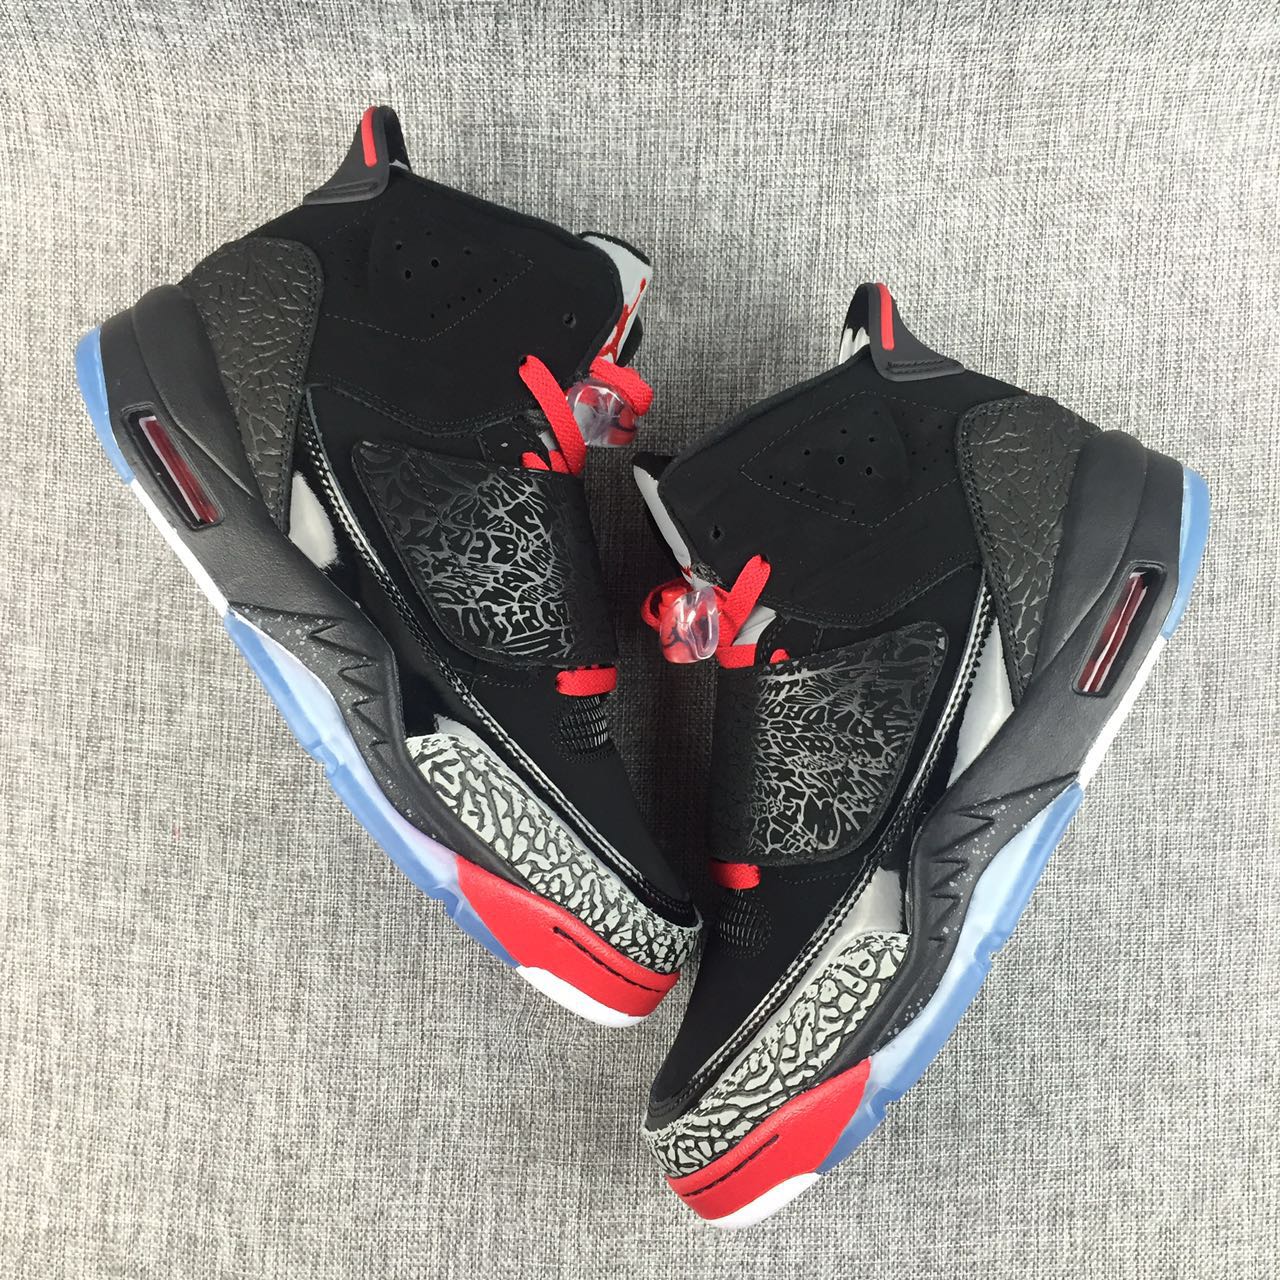 New Air Jordan 5.5 Black Red Grey Shoes